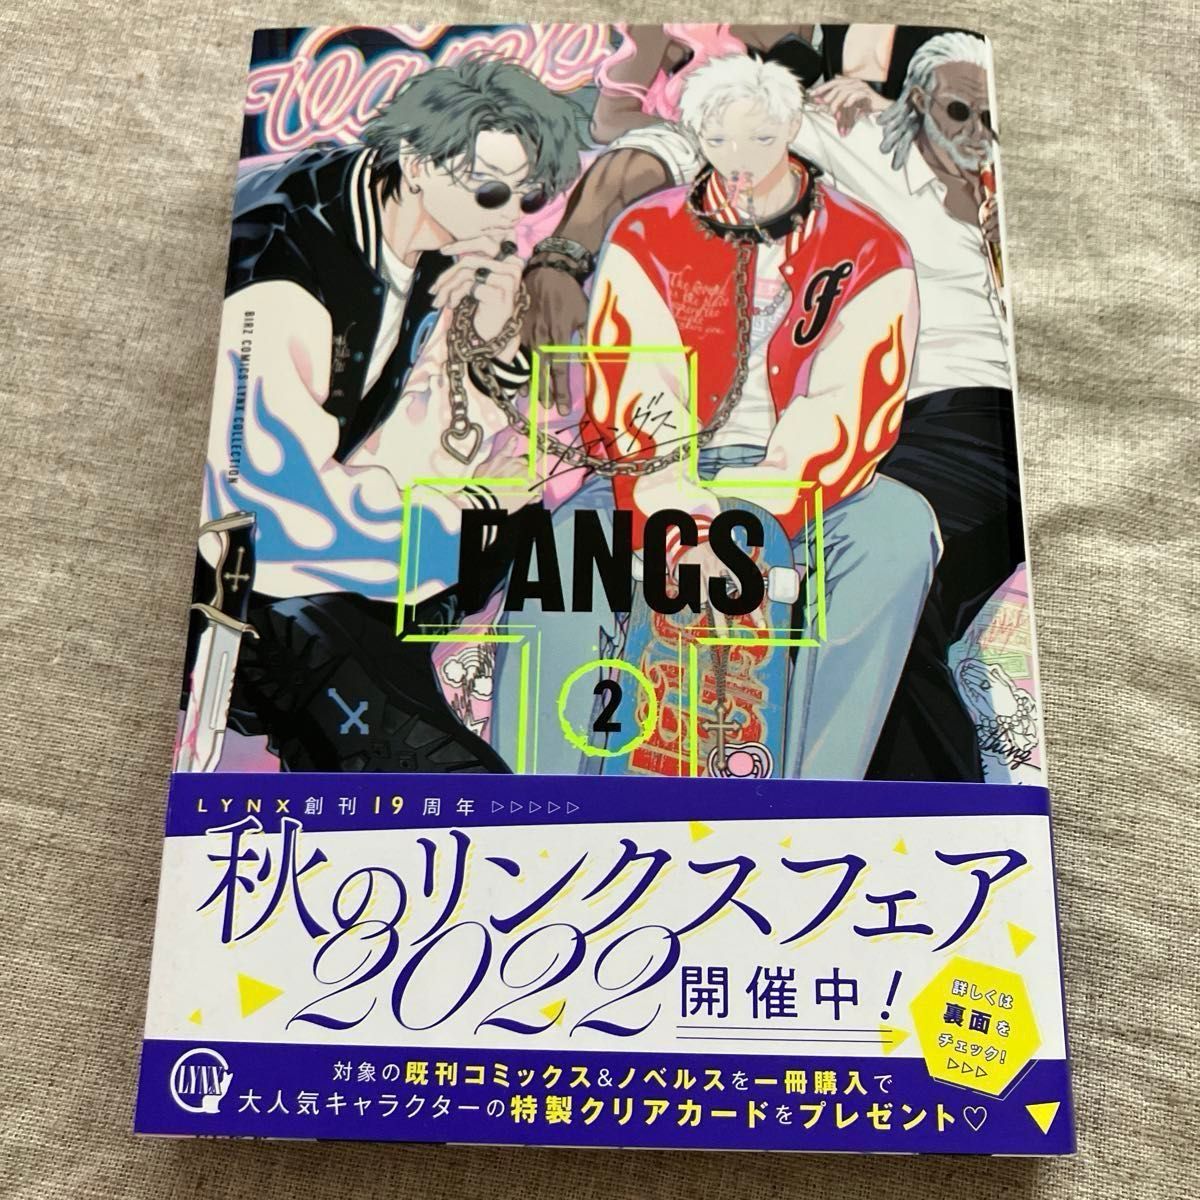 【新品未読本】ビリー・バリバリー「FANGS 」2、3巻セット